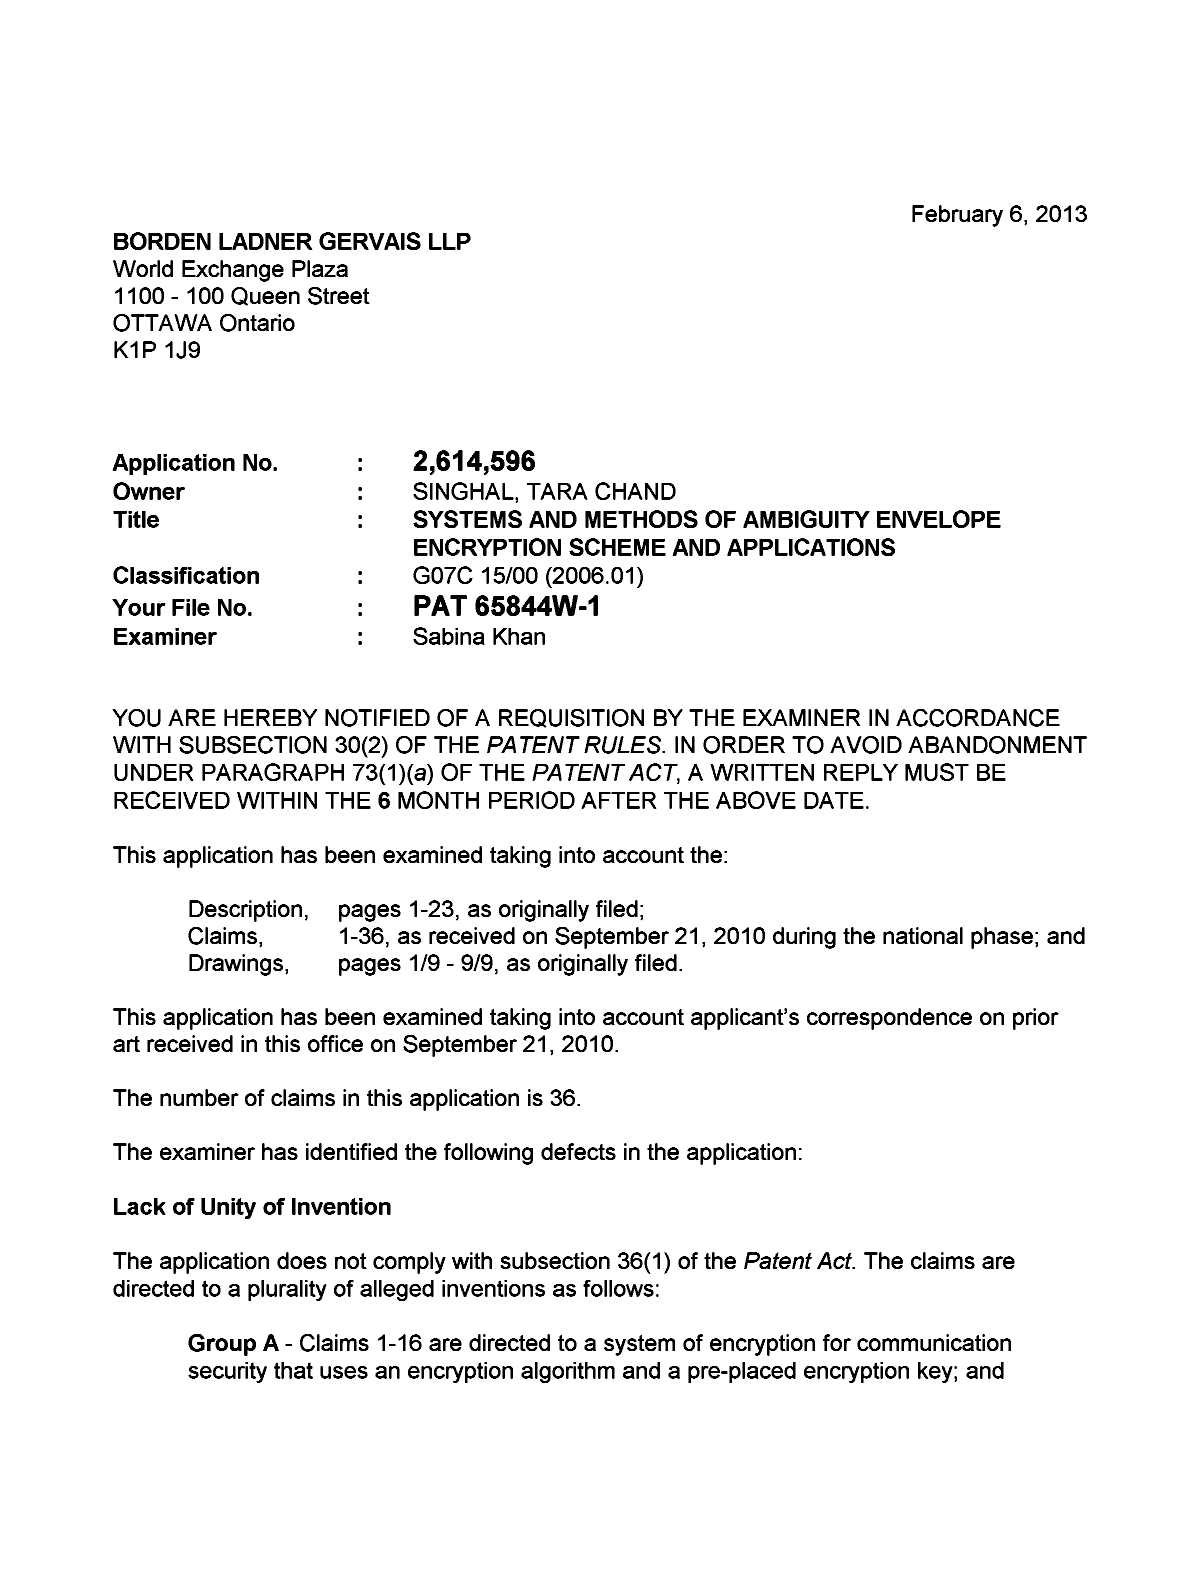 Document de brevet canadien 2614596. Poursuite-Amendment 20130206. Image 1 de 2